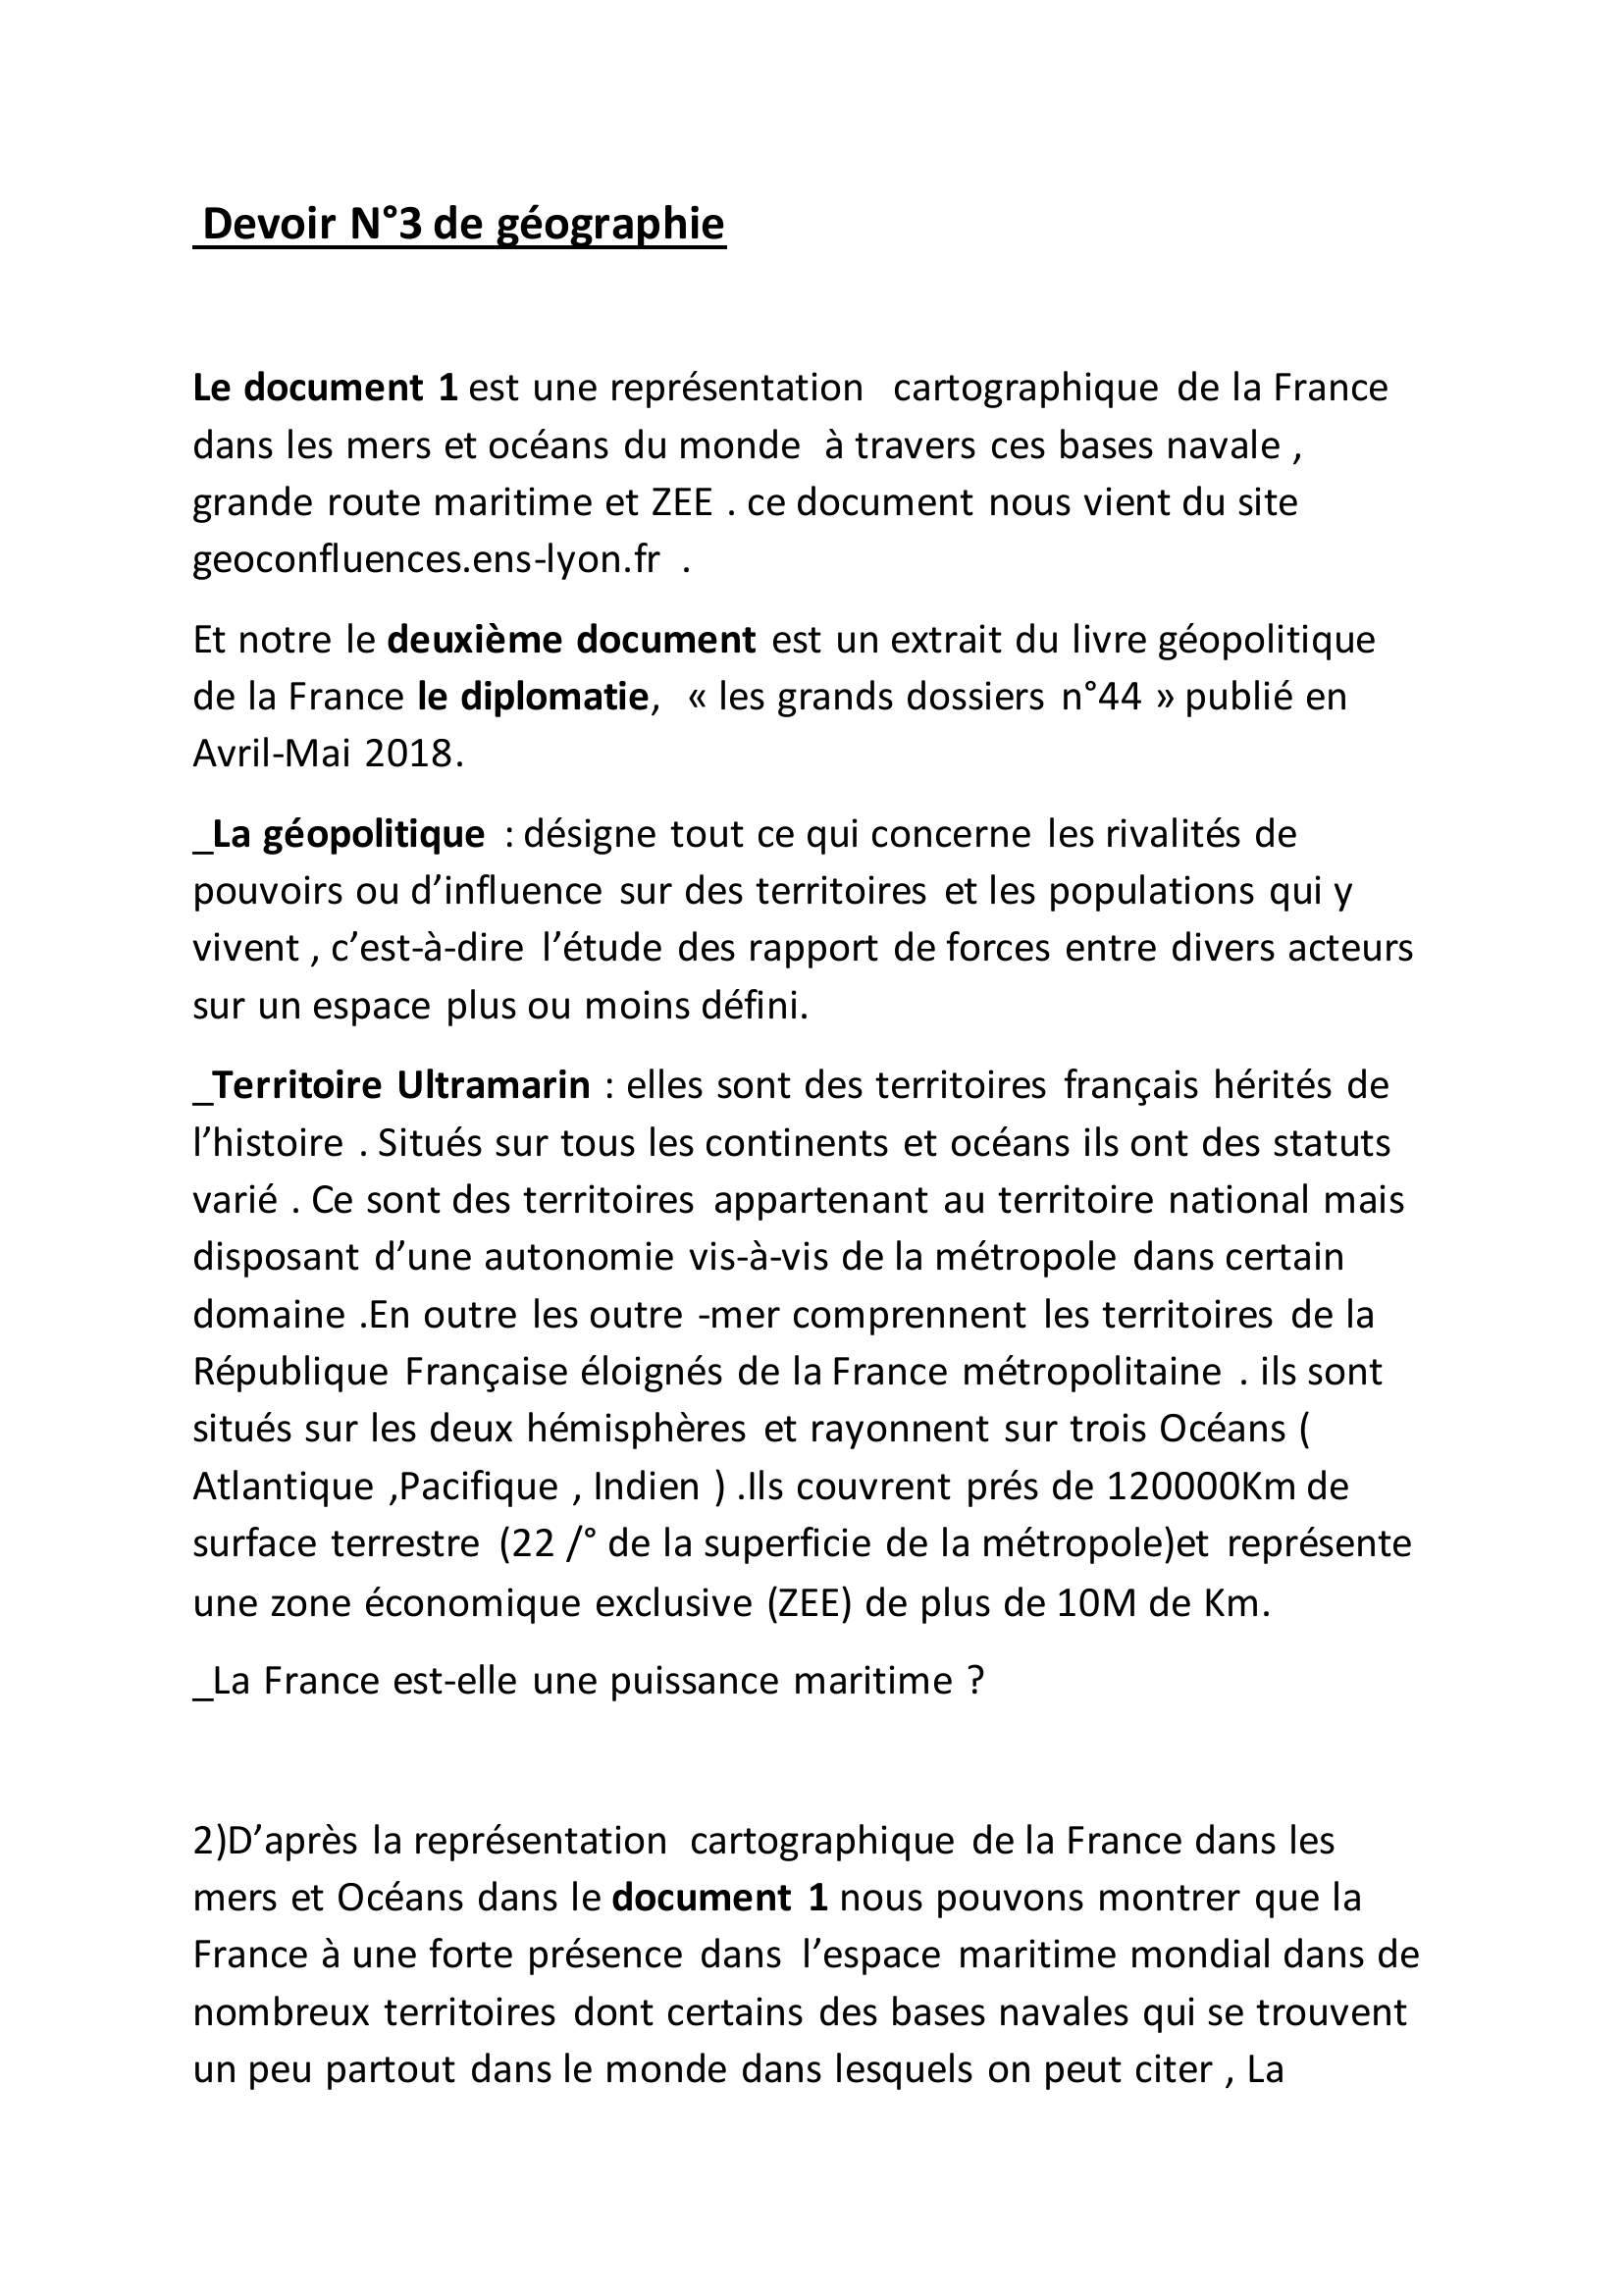 Prévisualisation du document DOcument3 DE G20: La France est-elle une puissance maritime ?